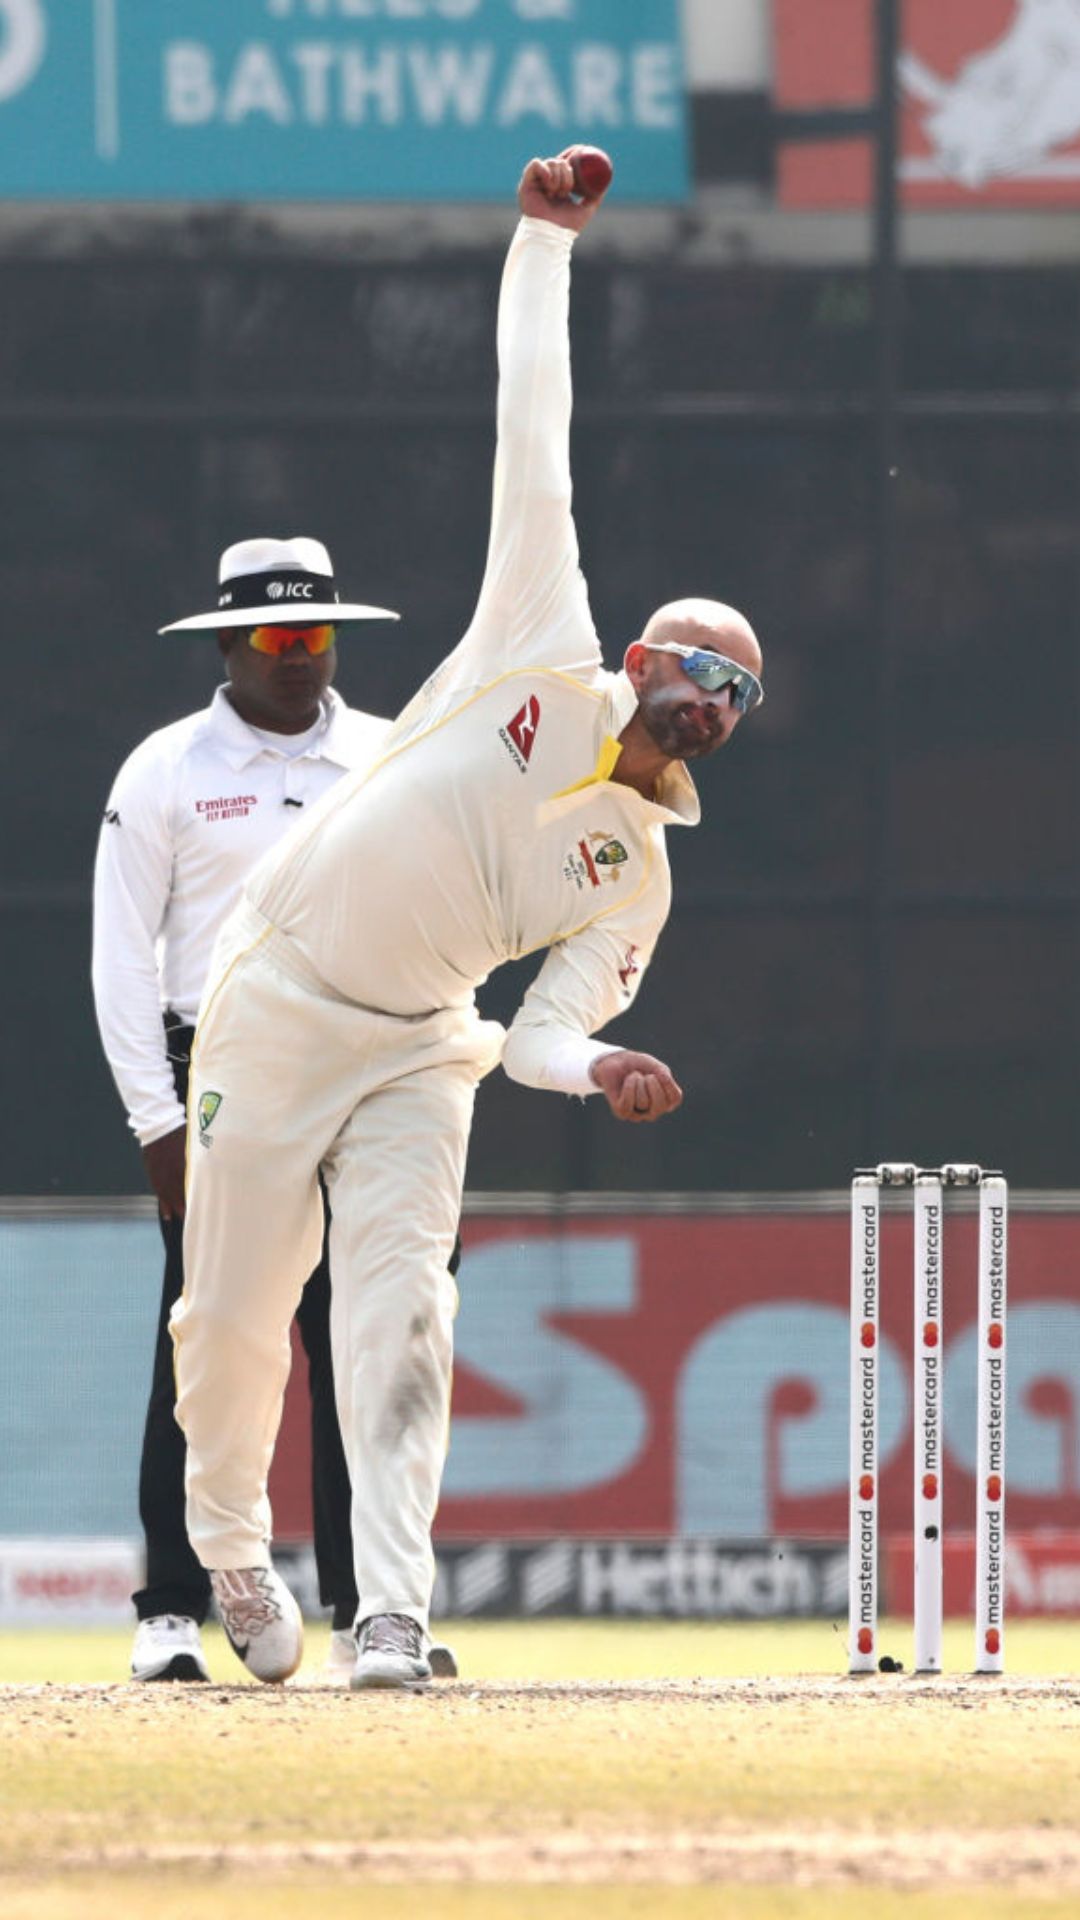 भारत के खिलाफ सबसे ज्यादा टेस्ट विकेट लेने वाले गेंदबाजों की लिस्ट